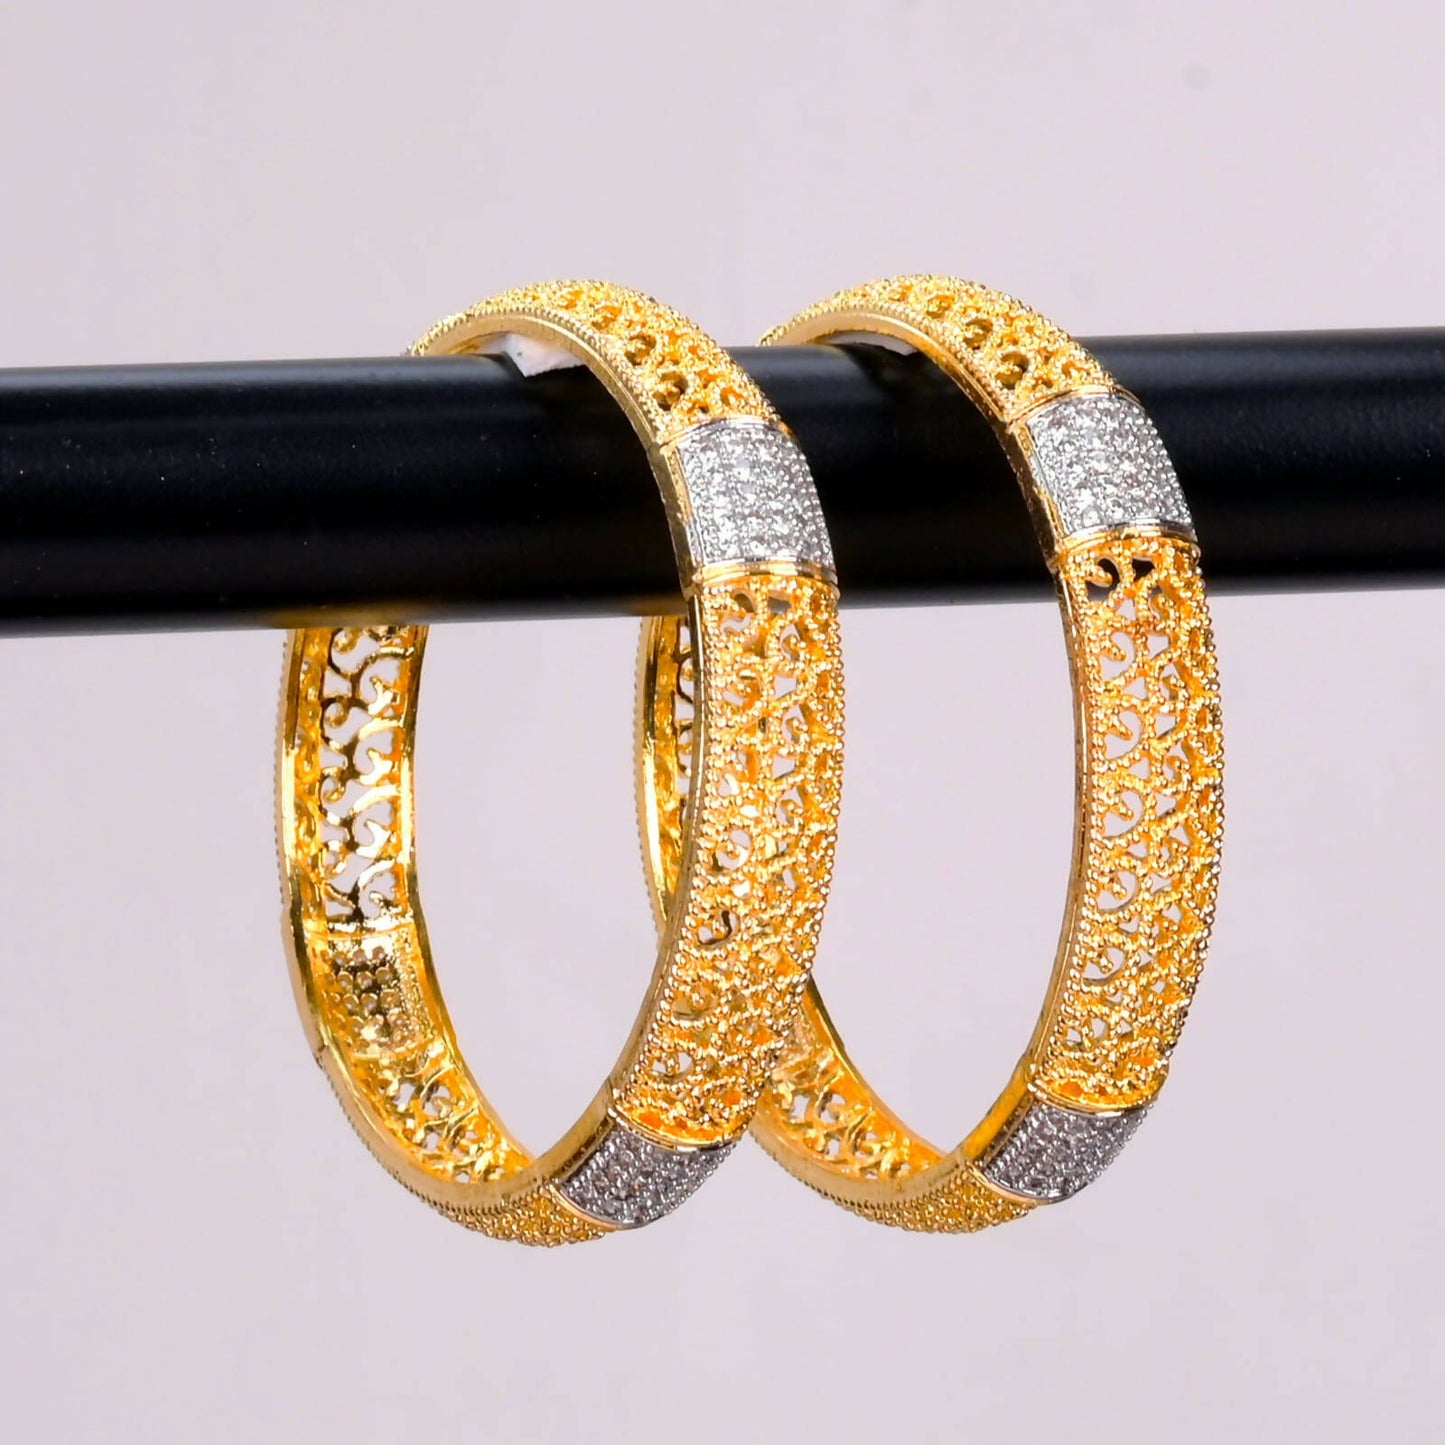 Diamond studded bangles